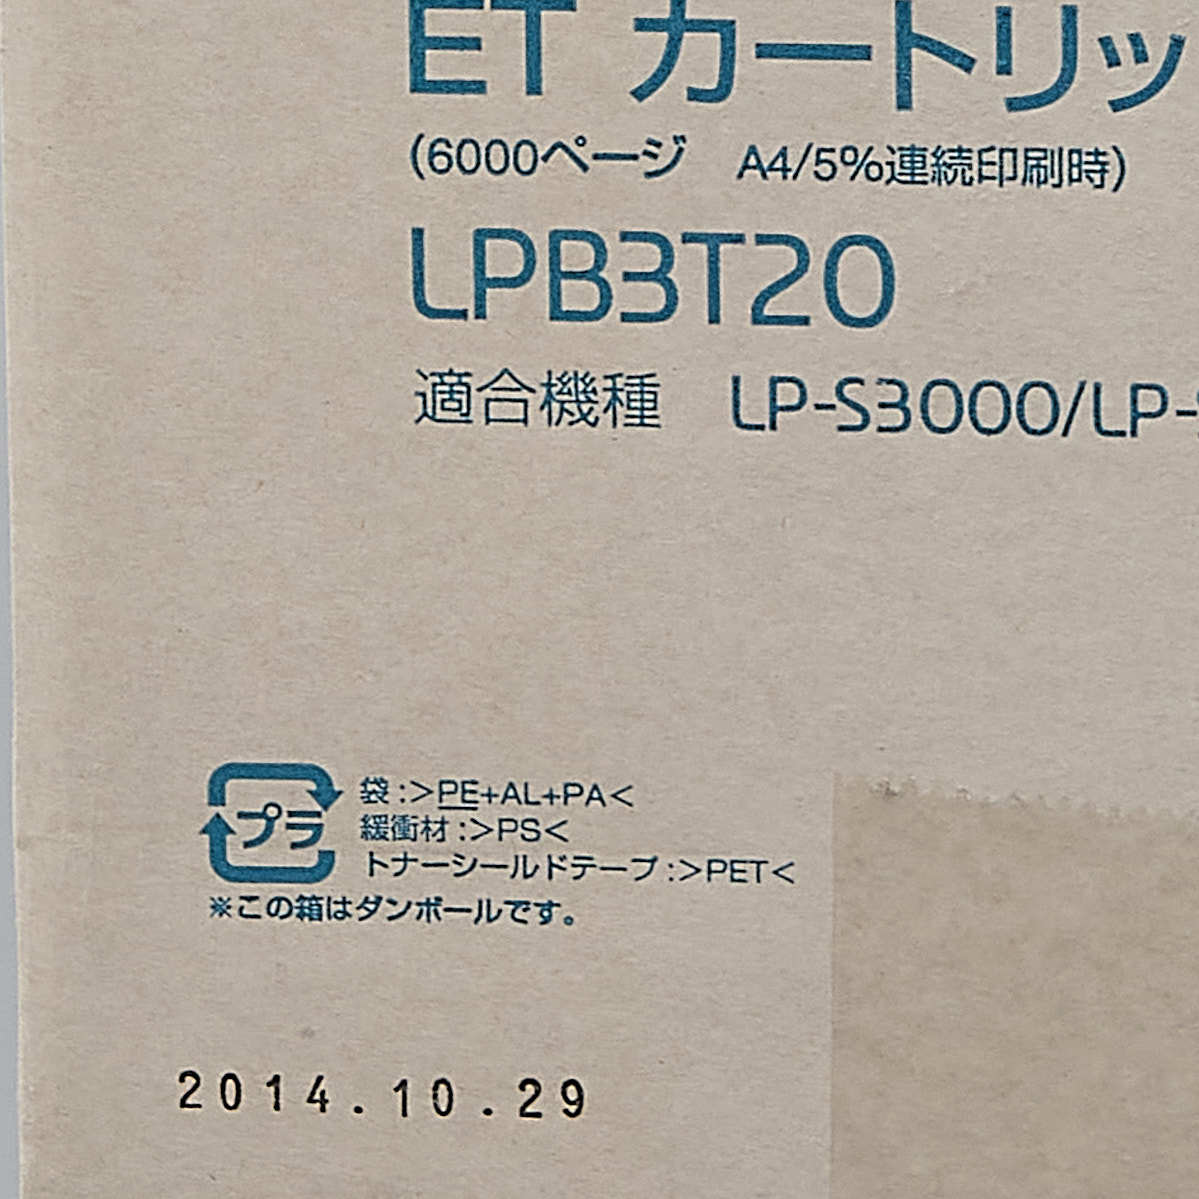 送料無料!! EPSON LPB3T20 ETカートリッジ 純正 適合機種 LP-S3000/LP-S3000PS/LP-S2000 印字枚数 6000 枚_画像5